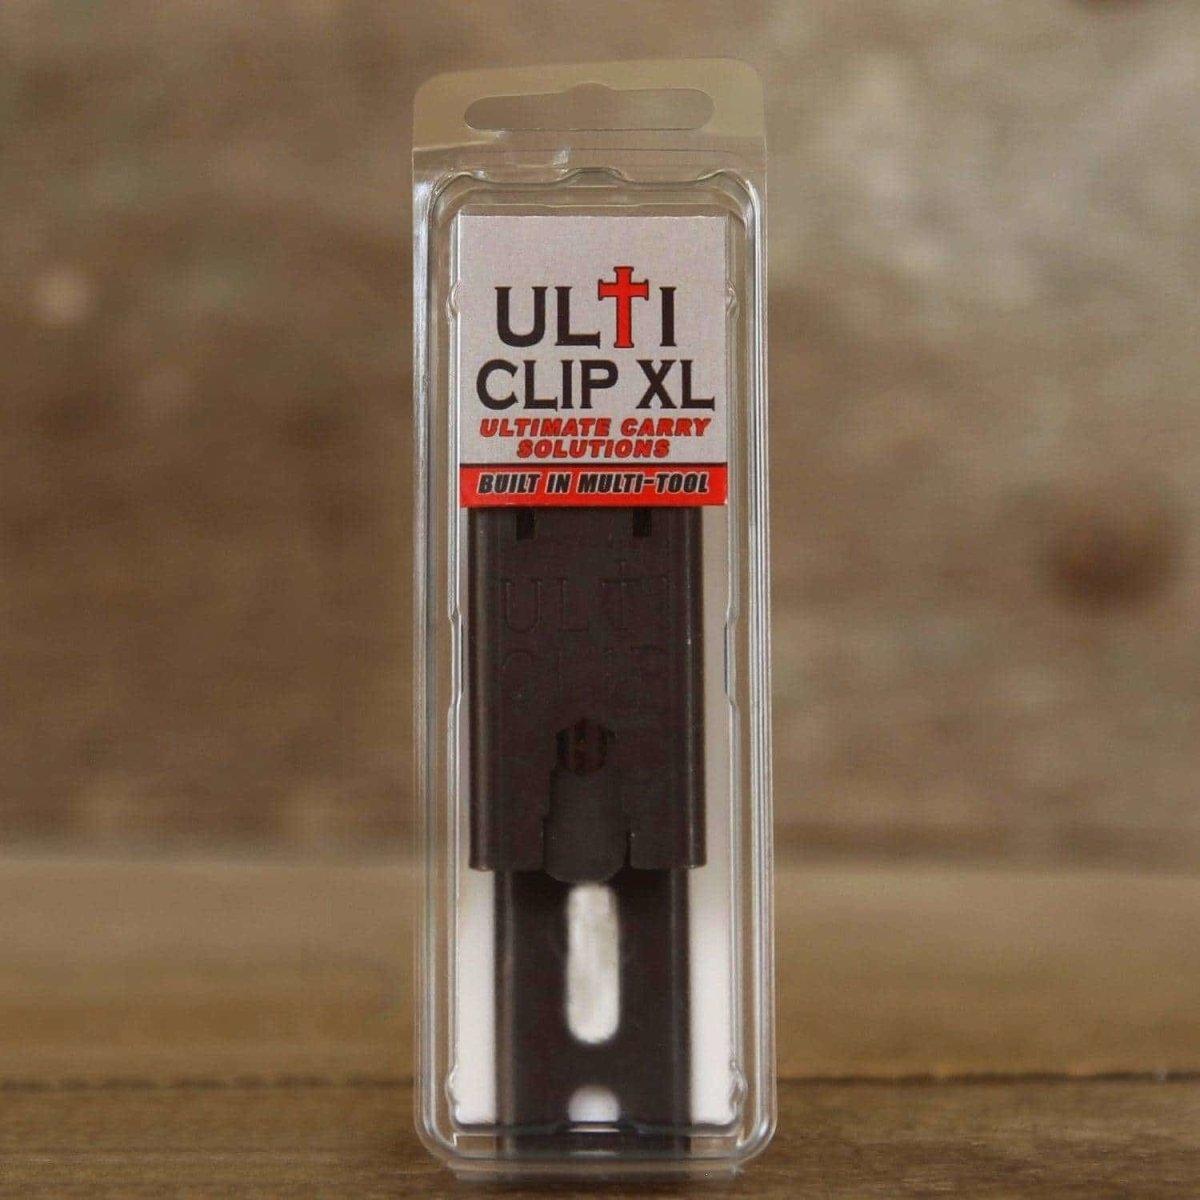 ULTICLIP XL Tuckable Holster Clip